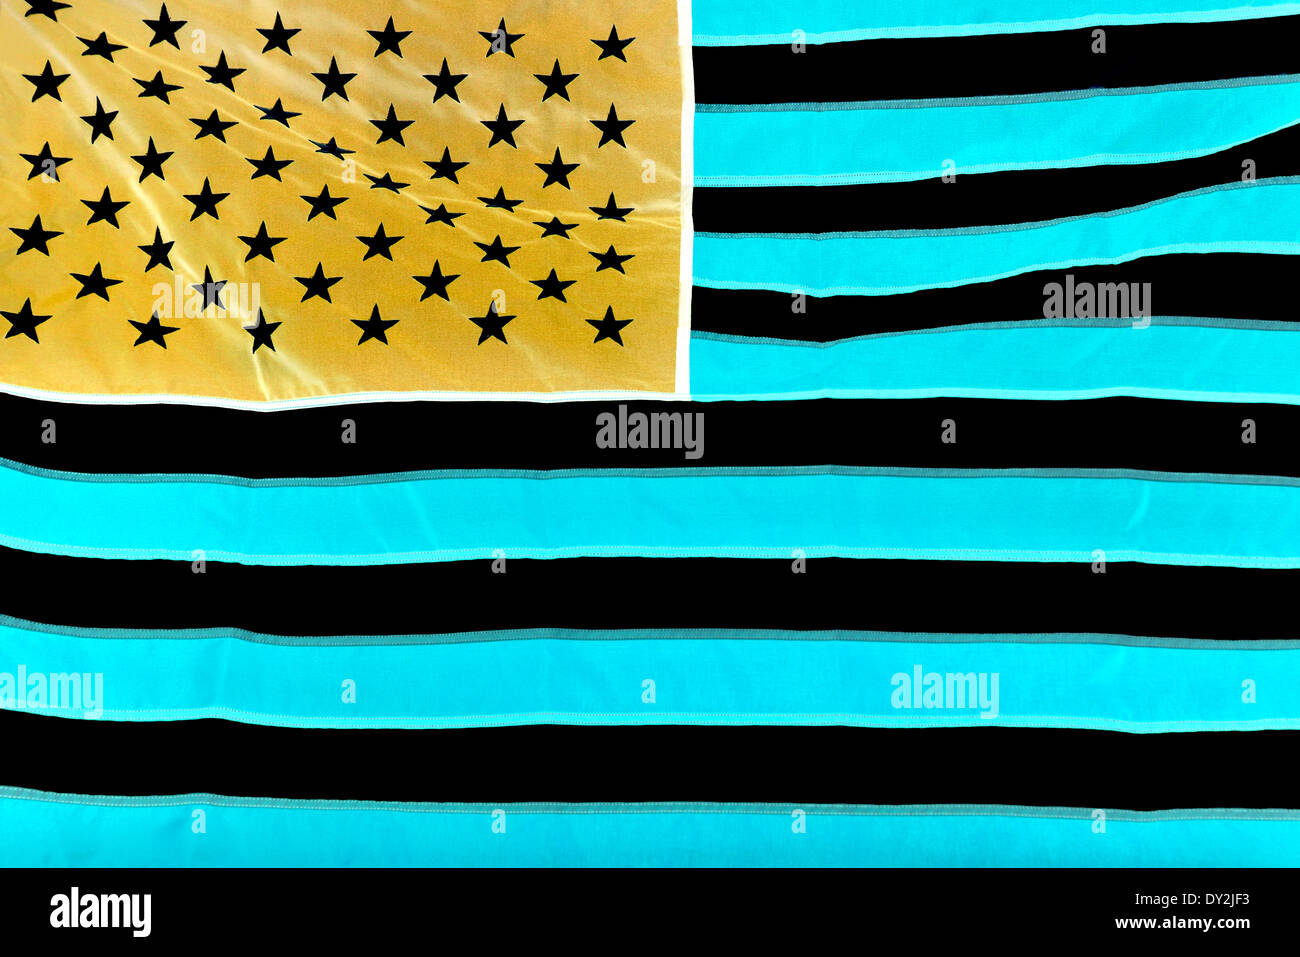 Le drapeau national des États-Unis d'Amérique version négative. Banque D'Images